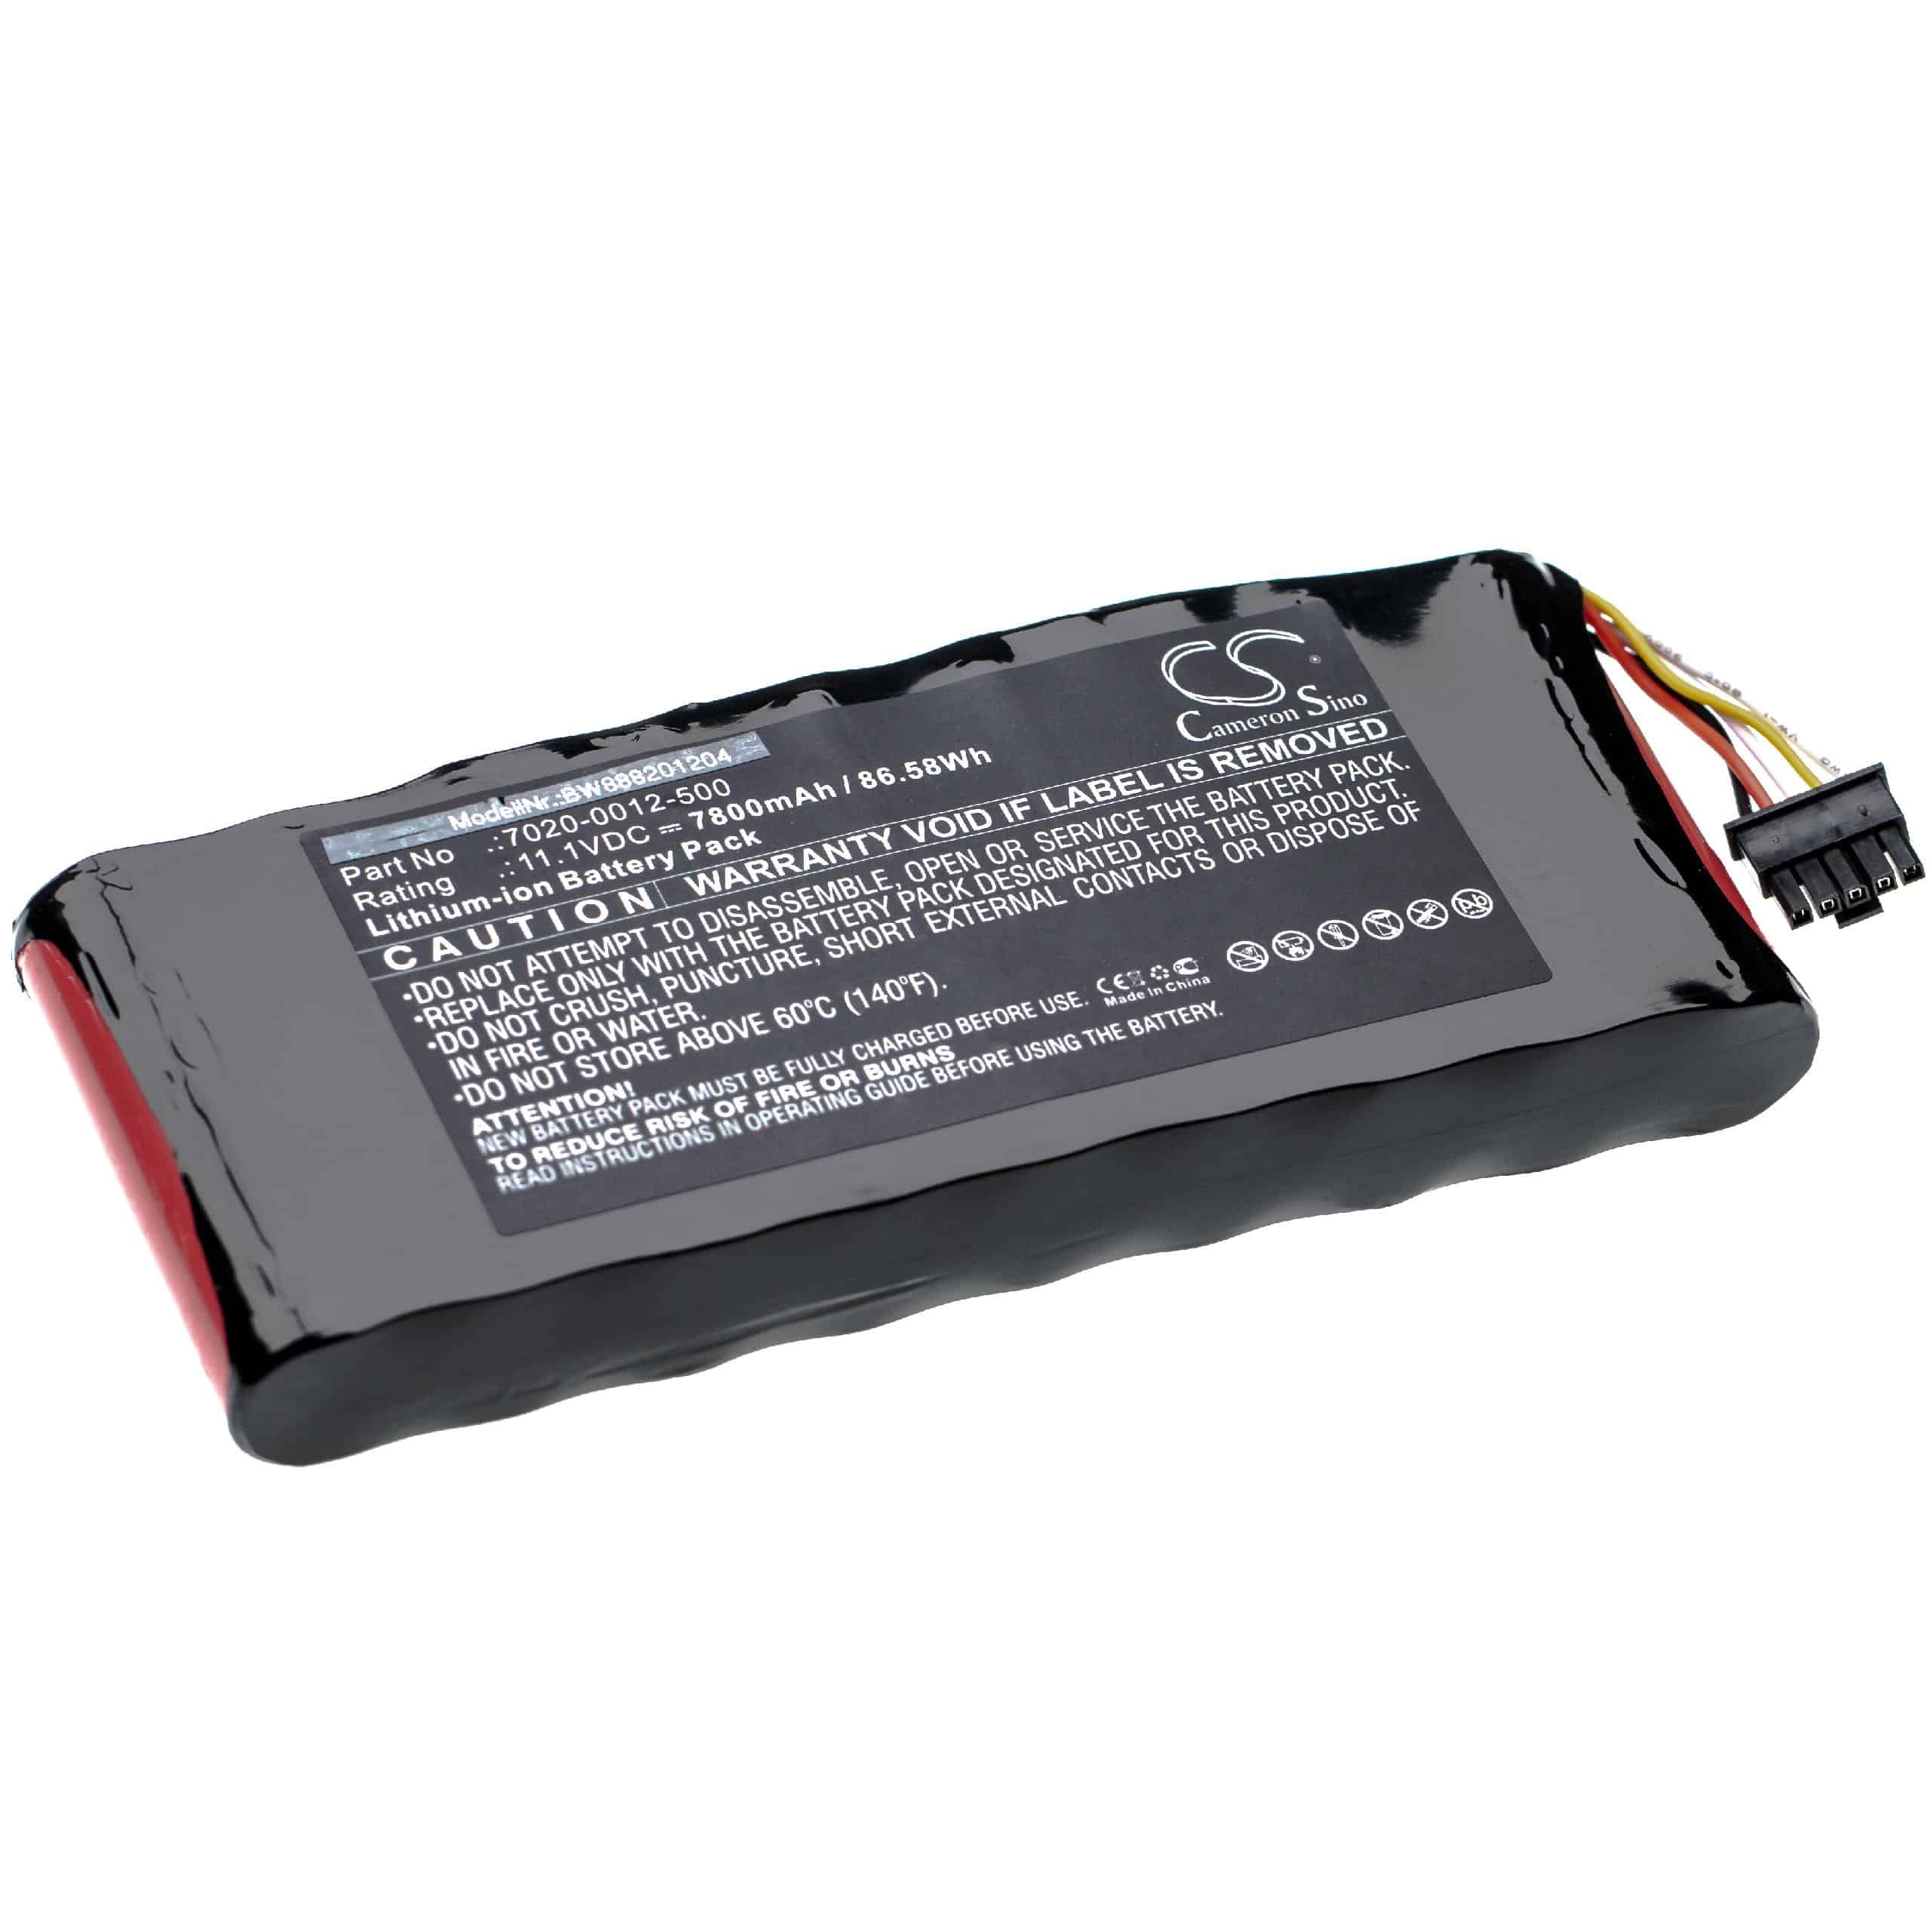 Batteria per dispositivo di misurazione sostituisce Aeroflex 7020-0012-500 Aeroflex - 7800mAh 11,1V Li-Ion